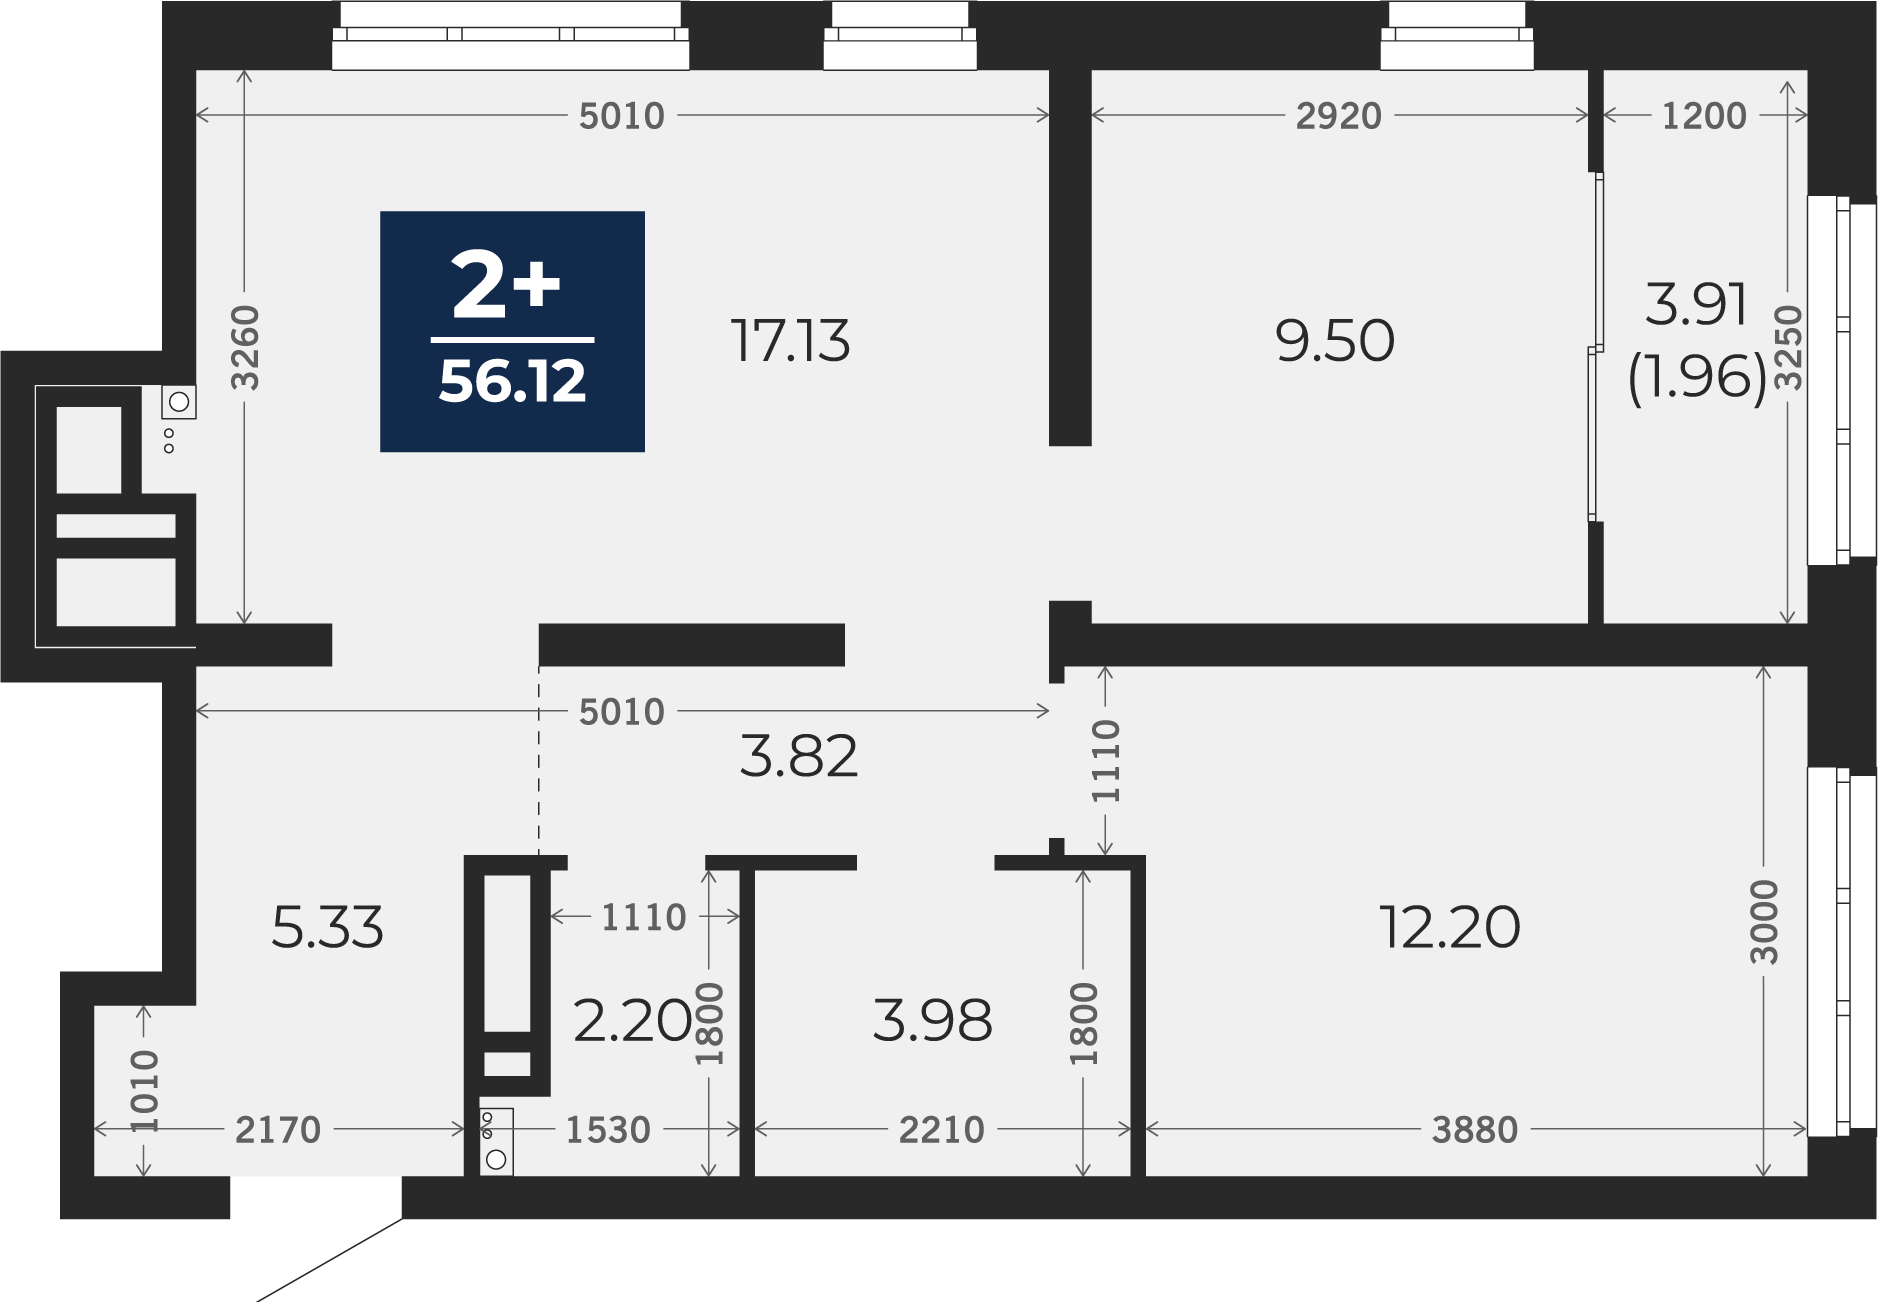 Квартира № 210, 2-комнатная, 56.12 кв. м, 22 этаж